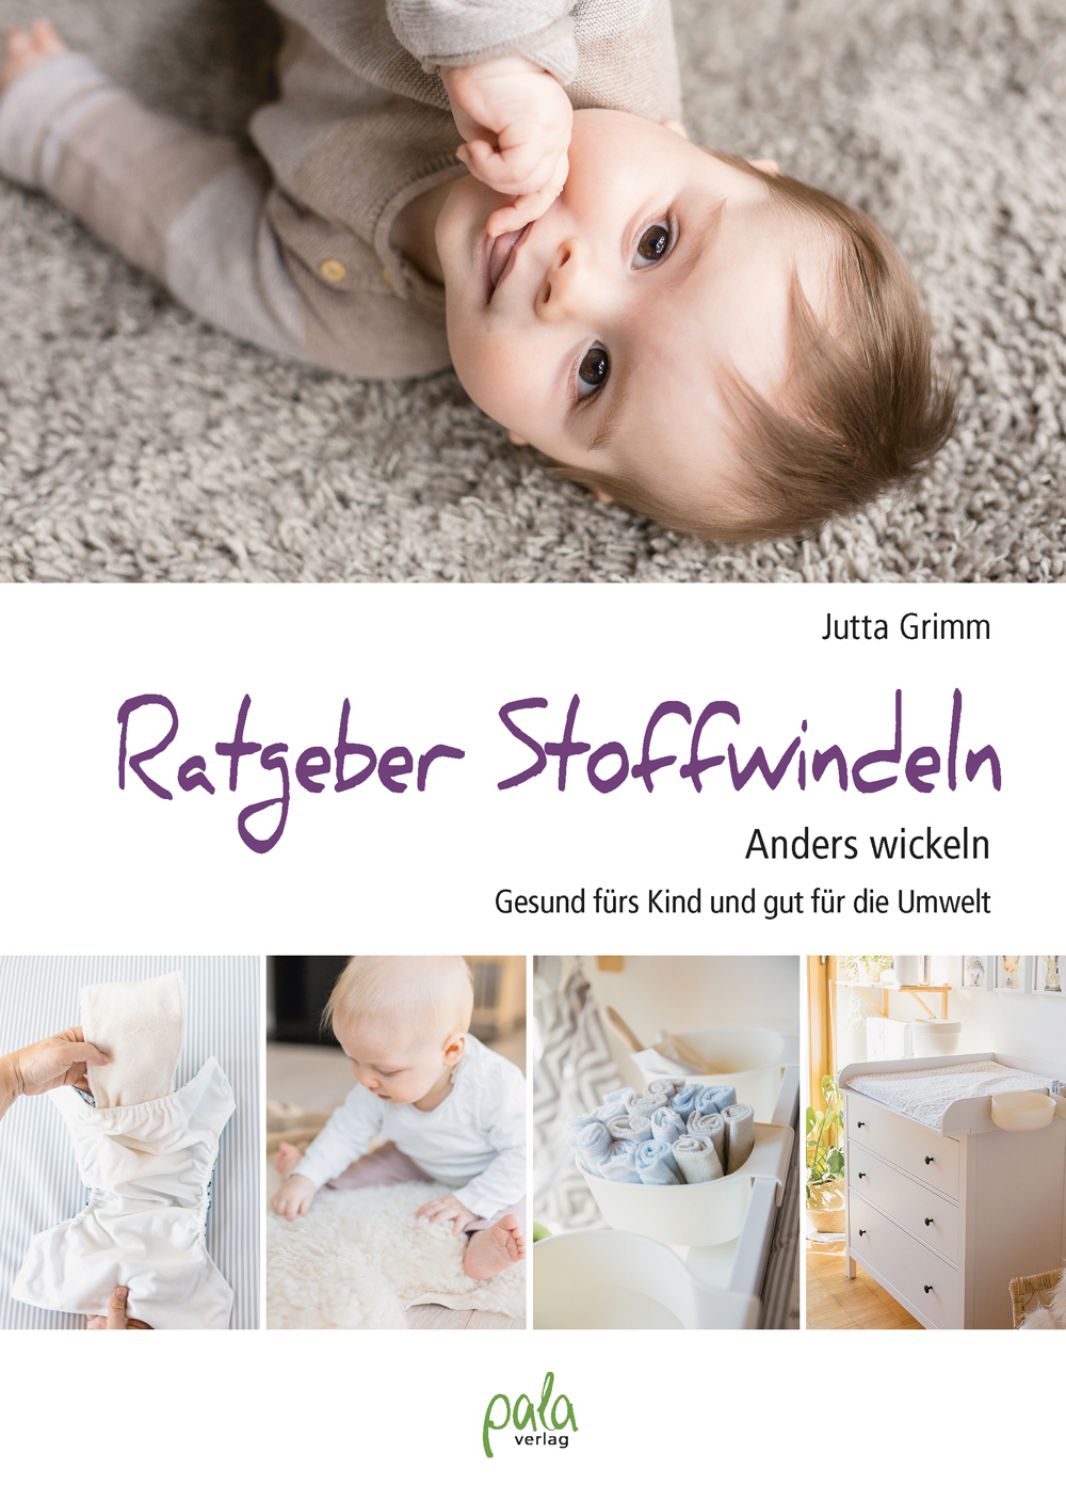 Ratgeber Stoffwindeln: Anders wickeln - Gesund fürs Kind und gut für die Umwelt (in German)